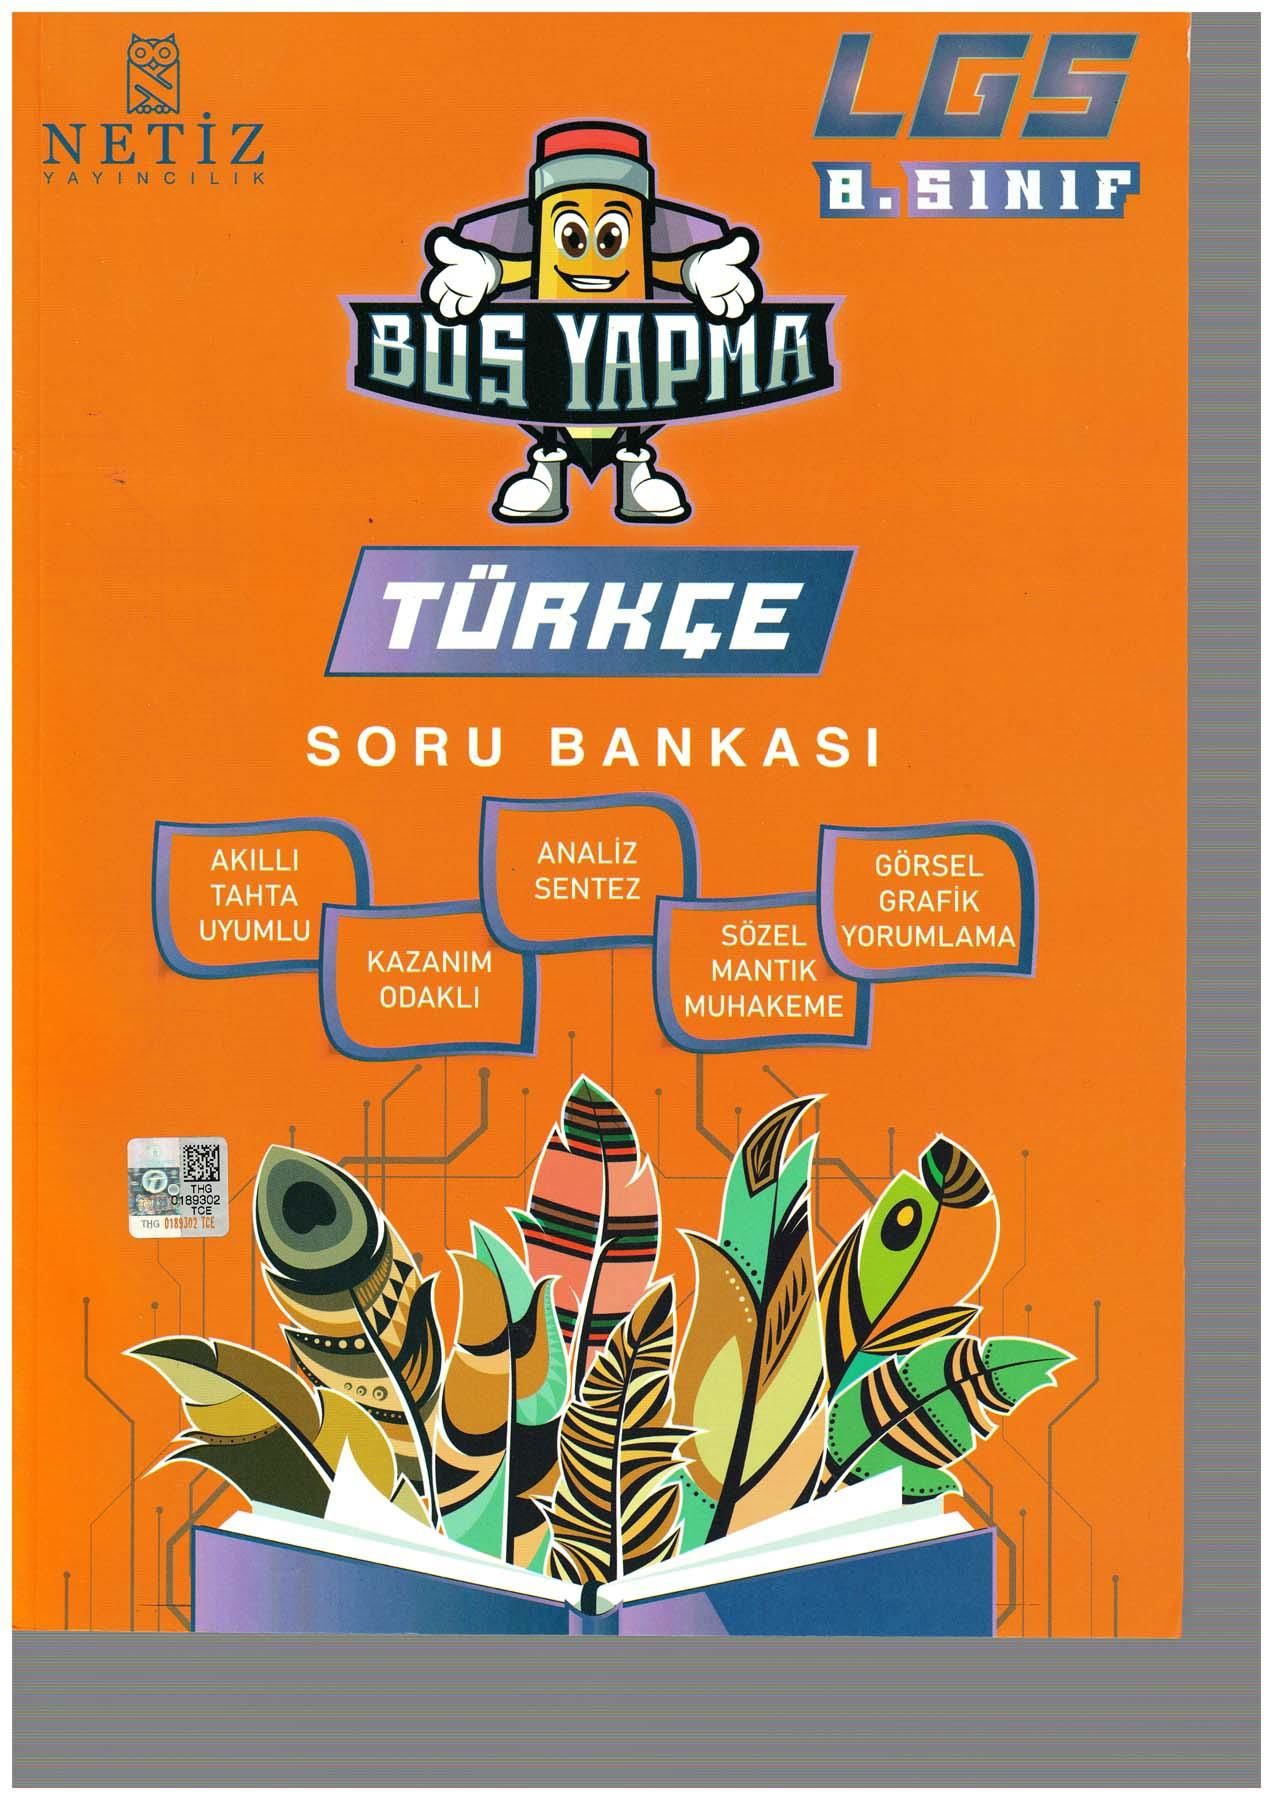 Netiz 8.Sınıf Boş Yapma Türkçe Soru Bankası